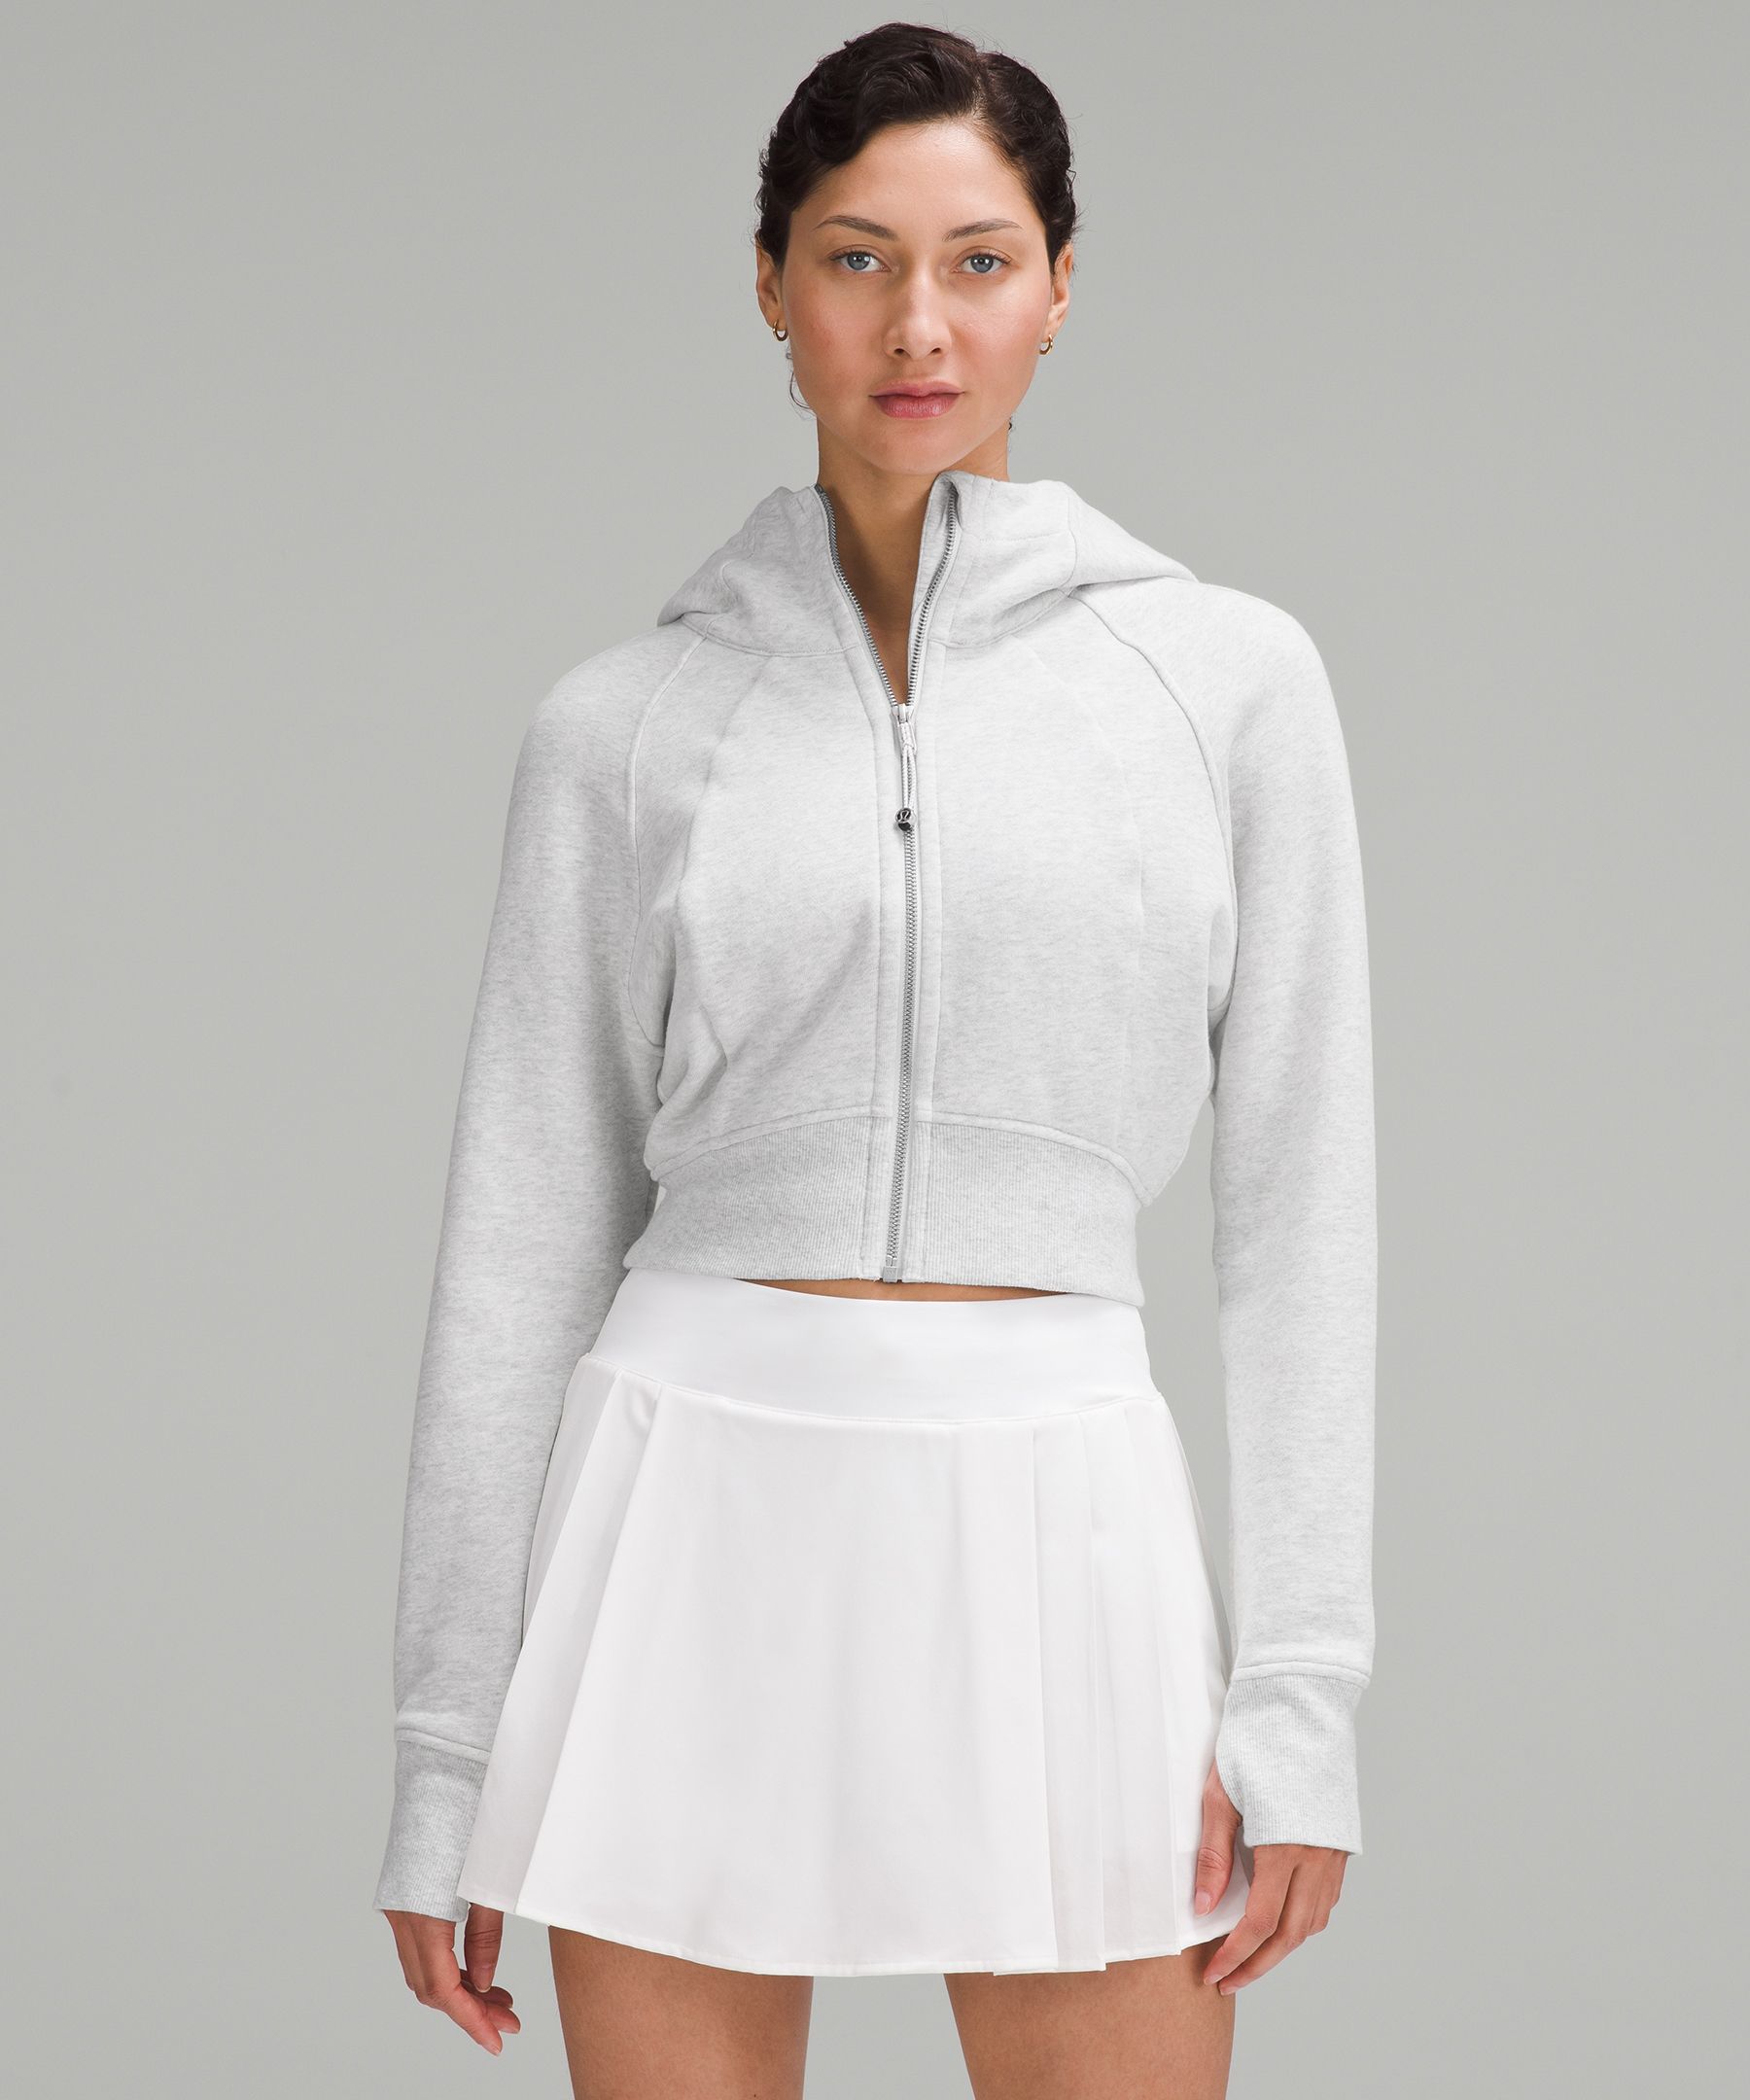 Scuba Full-Zip Cropped Hoodie, Women's Hoodies & Sweatshirts, lululemon